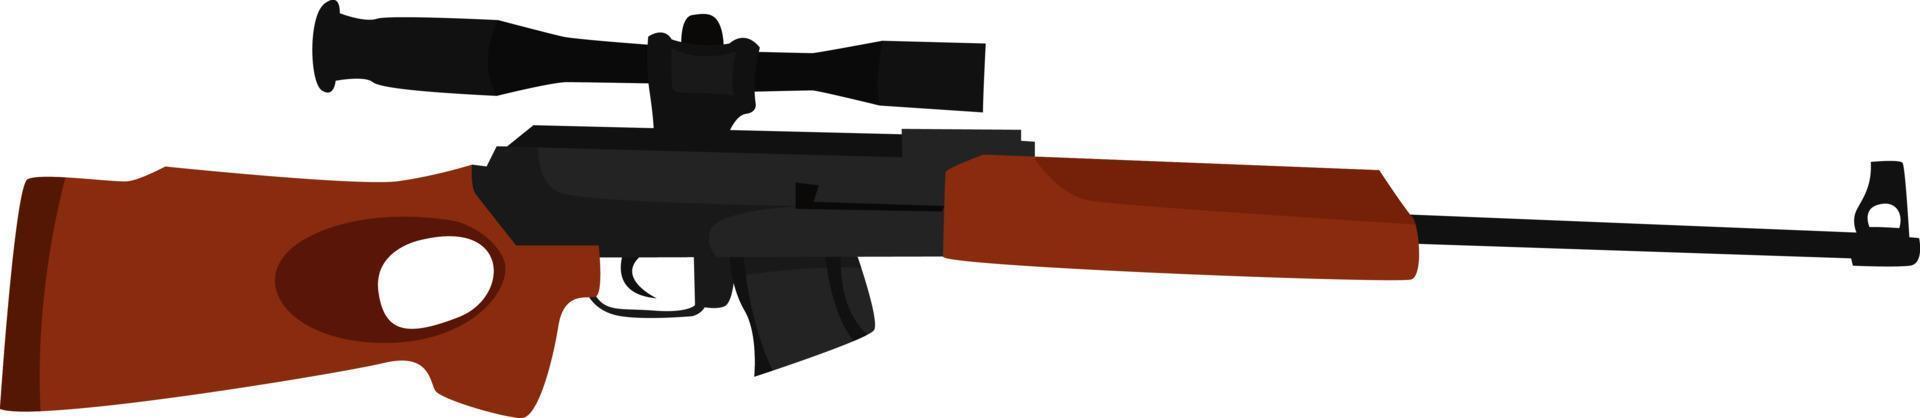 Fusil de sniper avec portée , illustration, vecteur sur fond blanc